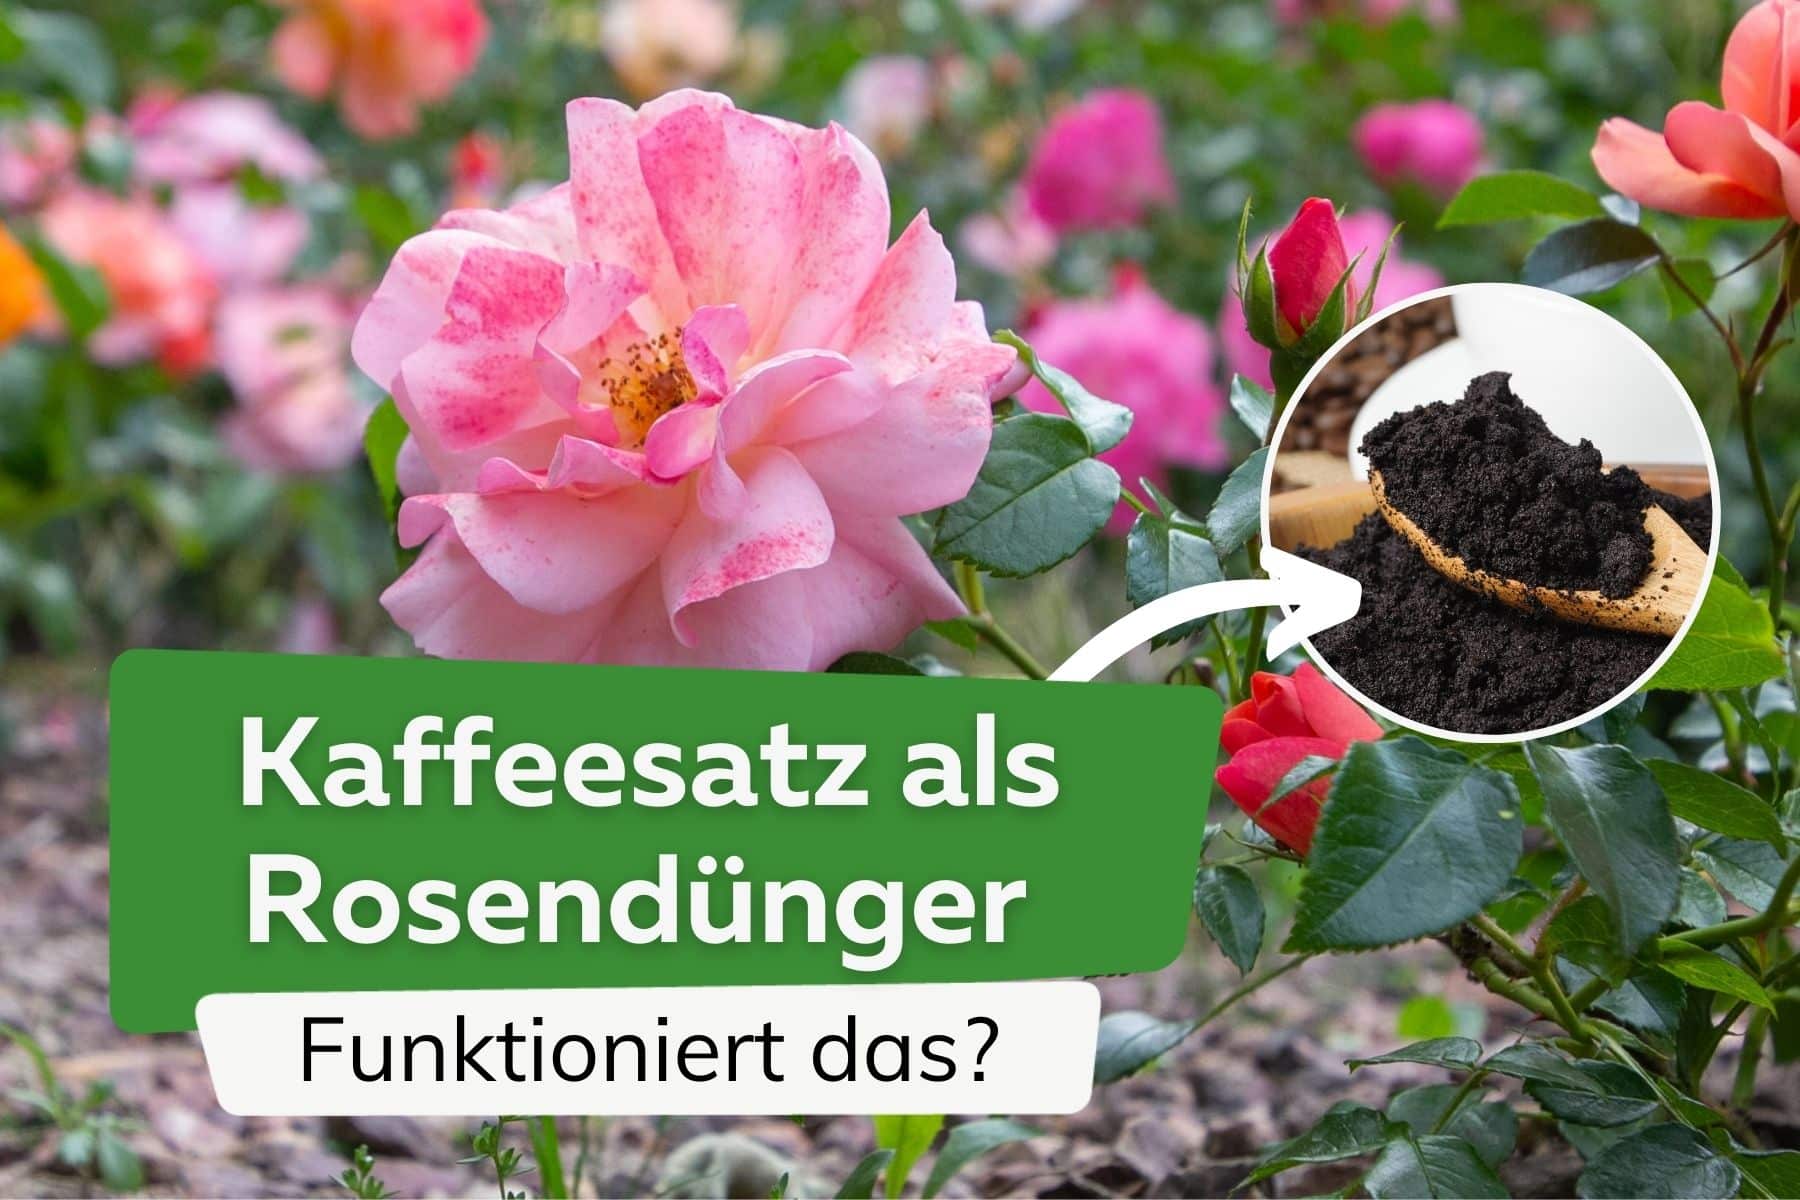 ¿Los posos de café actúan como fertilizante para las rosas?